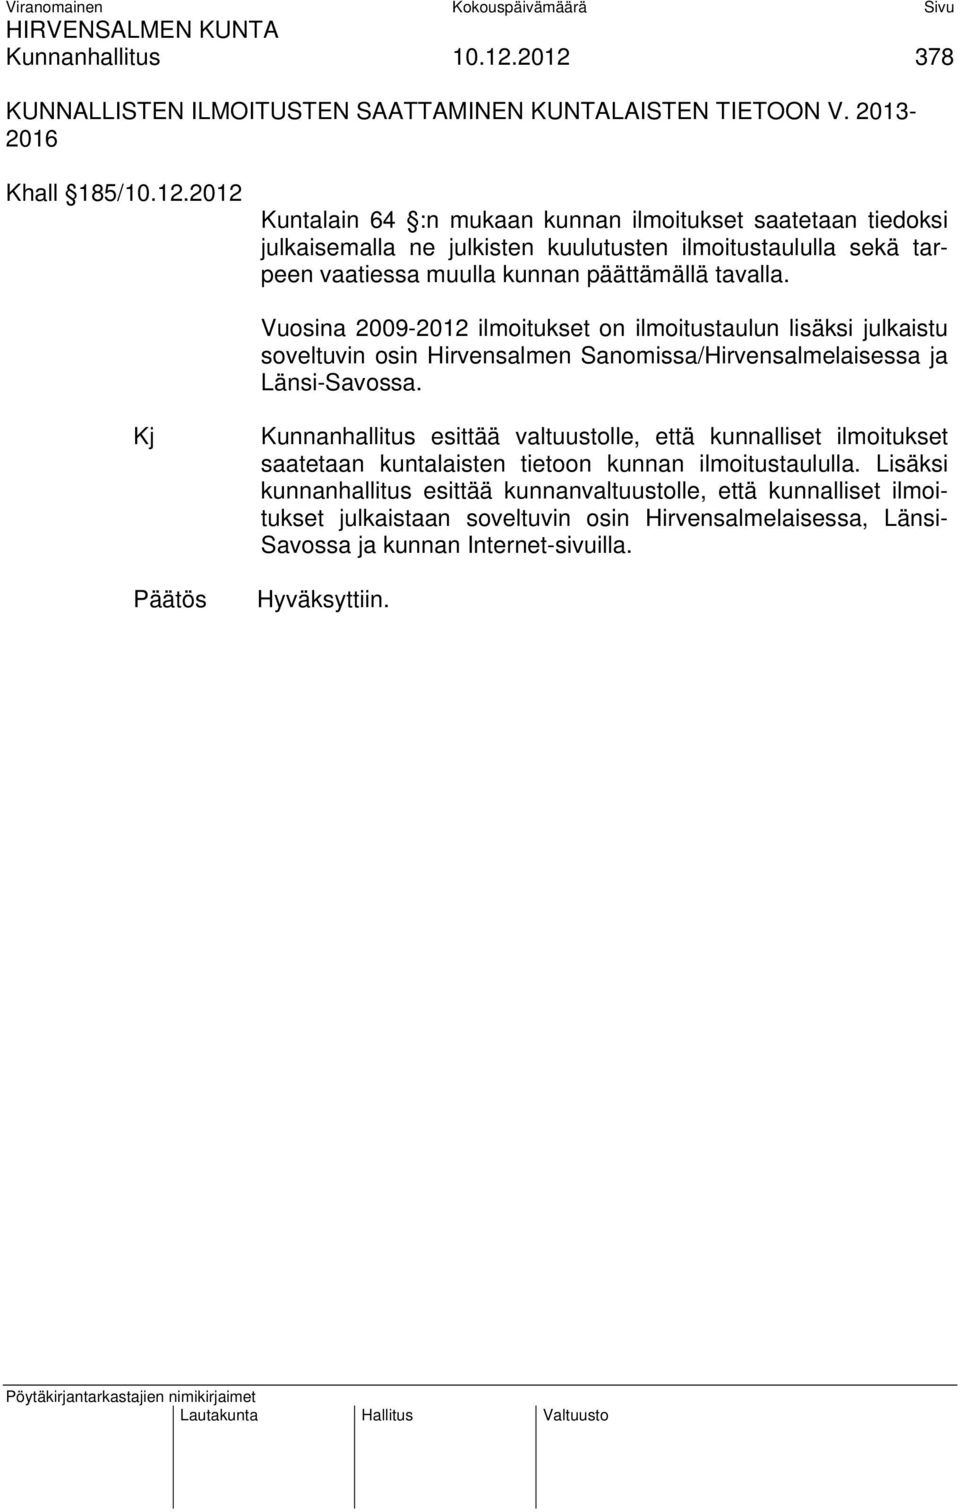 Vuosina 2009-2012 ilmoitukset on ilmoitustaulun lisäksi julkaistu soveltuvin osin Hirvensalmen Sanomissa/Hirvensalmelaisessa ja Länsi-Savossa.